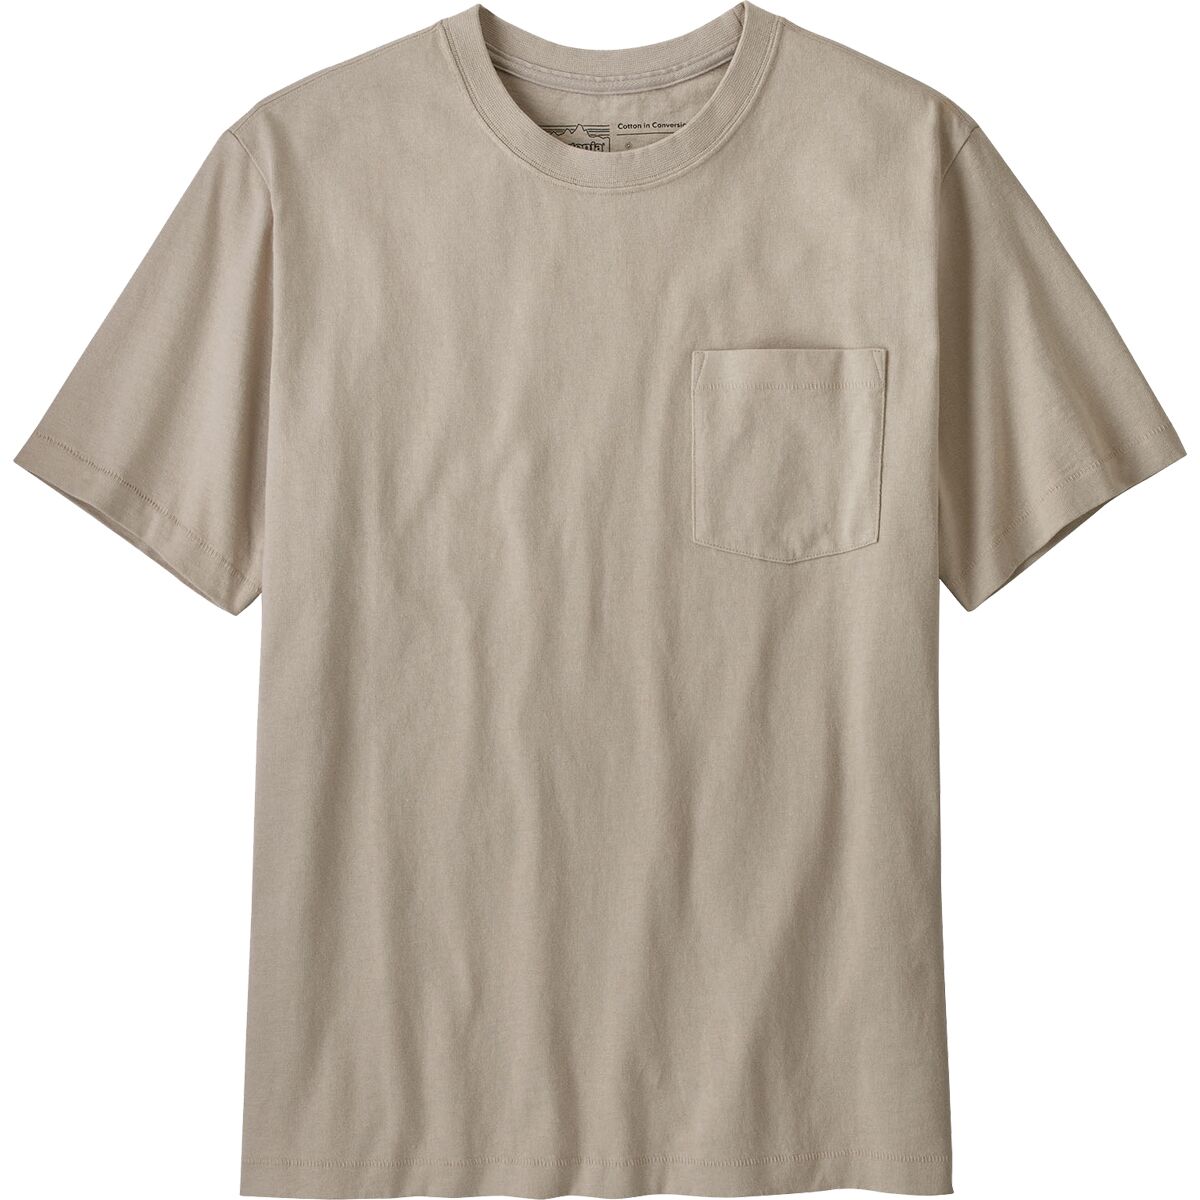 Хлопковая футболка с карманами средней плотности conversion Patagonia, цвет pumice